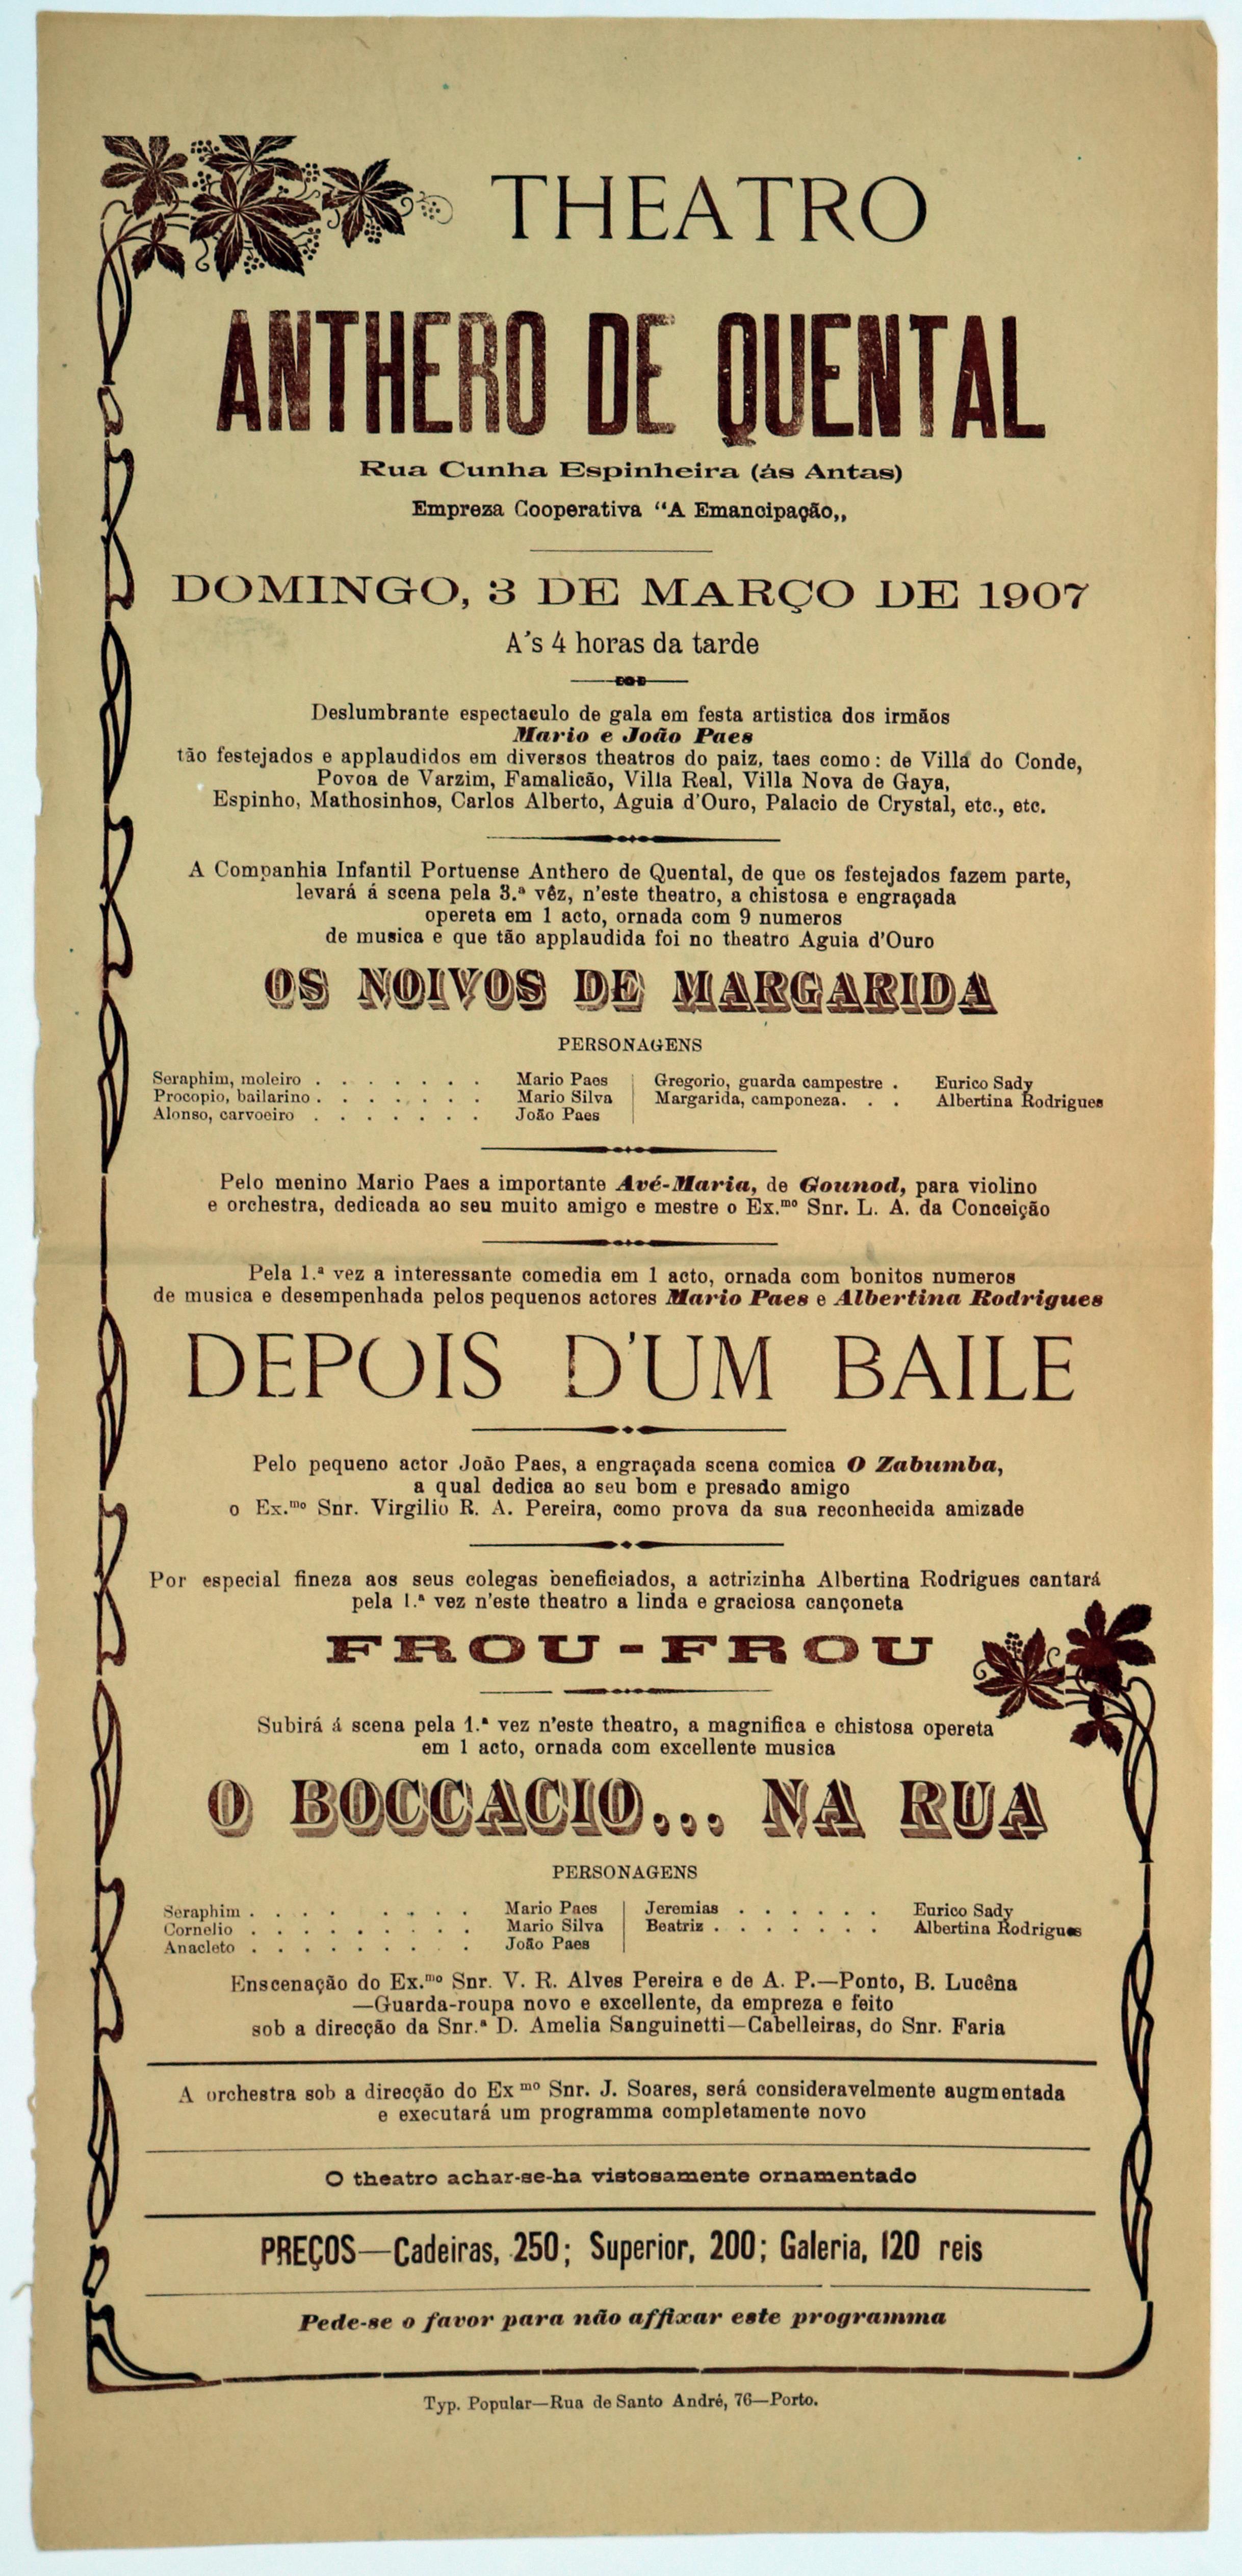 Teatro Antero de Quental : [Programa para] Domingo, 3 de Março de 1907